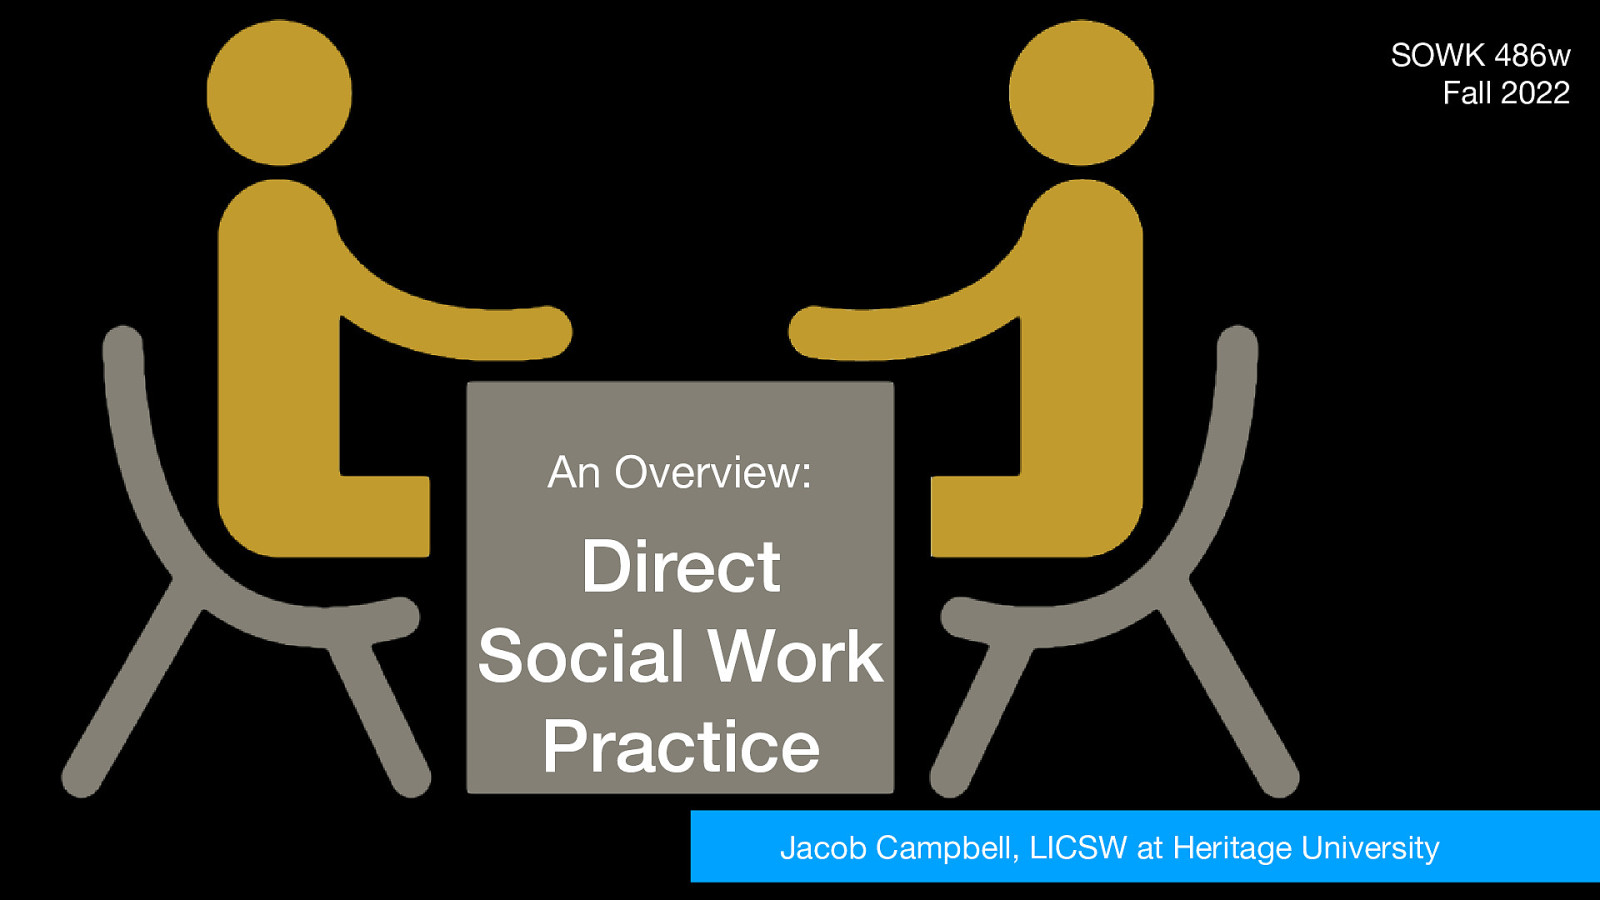 Fall 2022 SOWK 486w Week 03 - Direct Social Work Practice